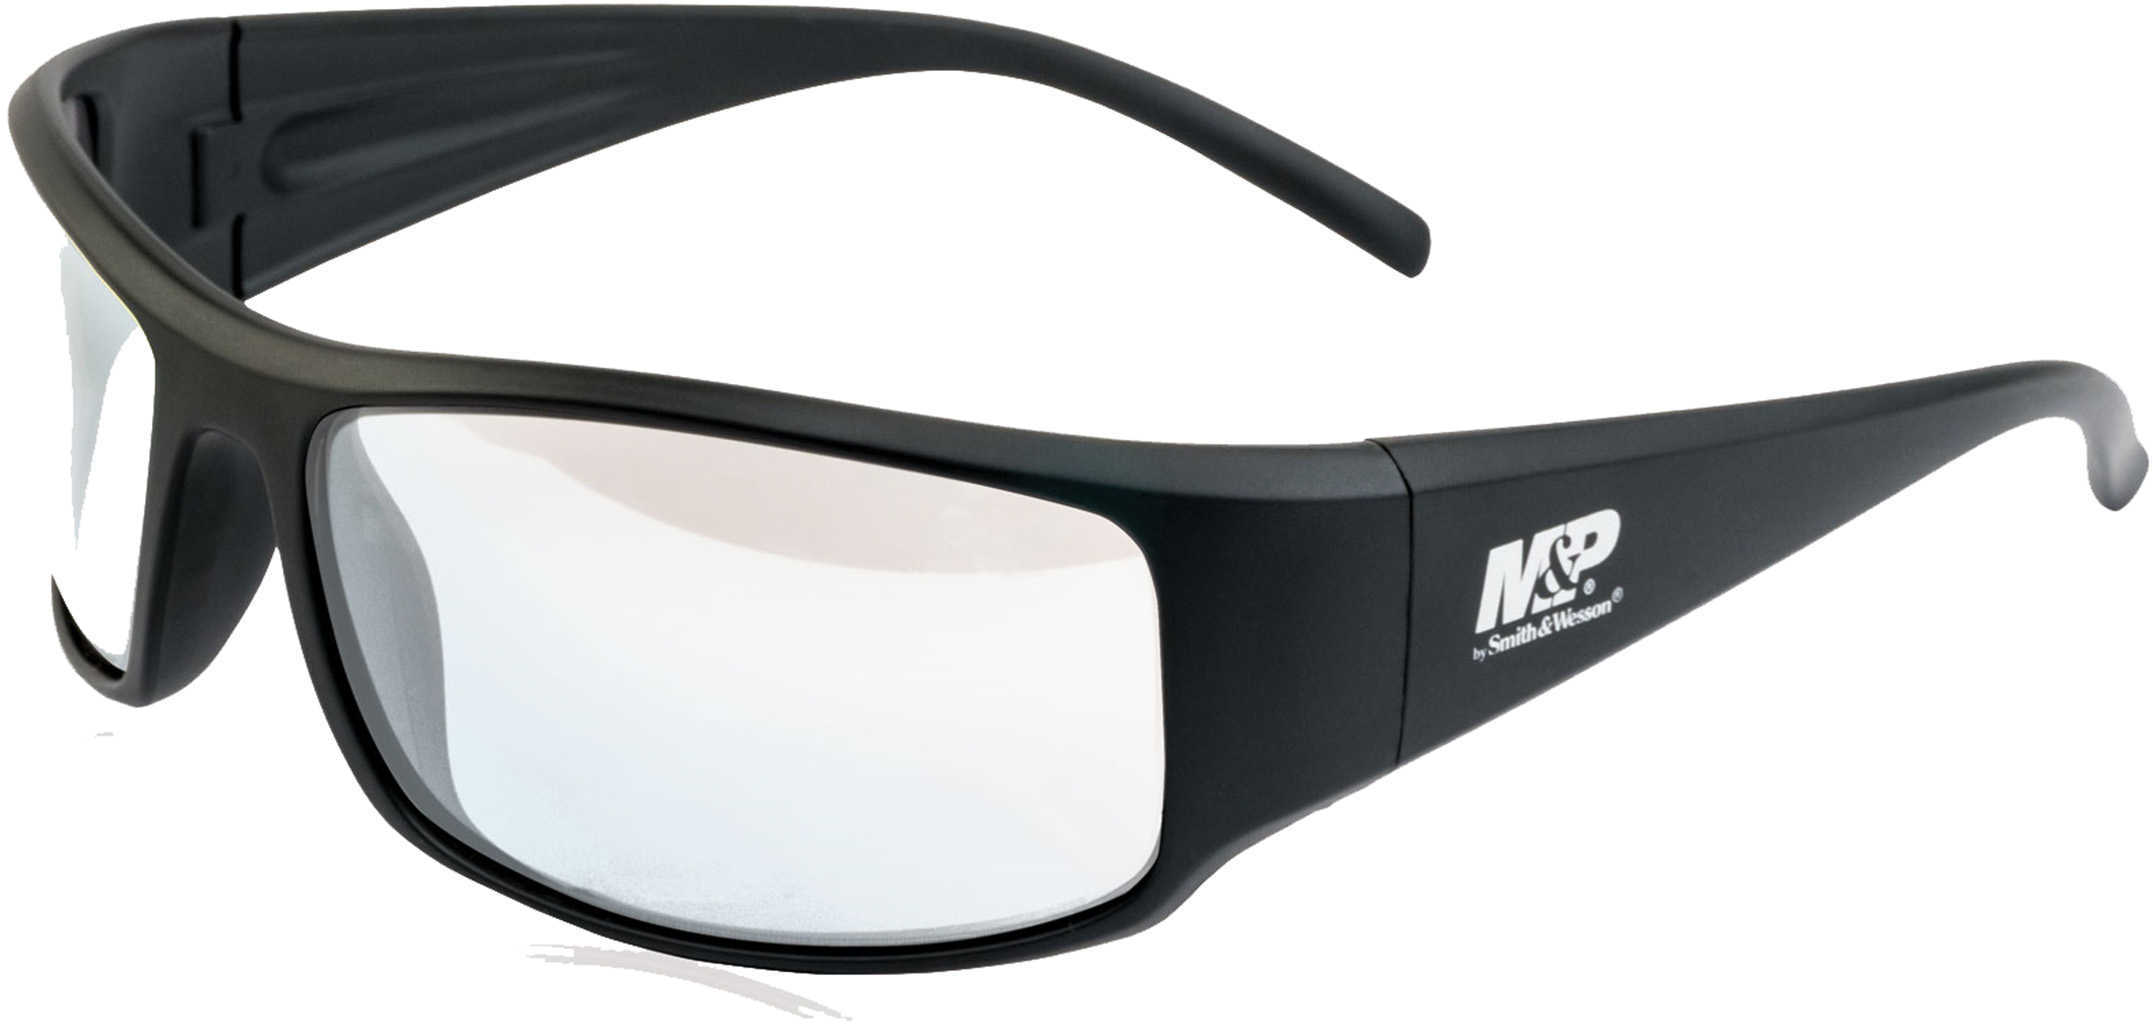 M&P Thunderbolt Shooting Glasses Black Frame Cle-img-1